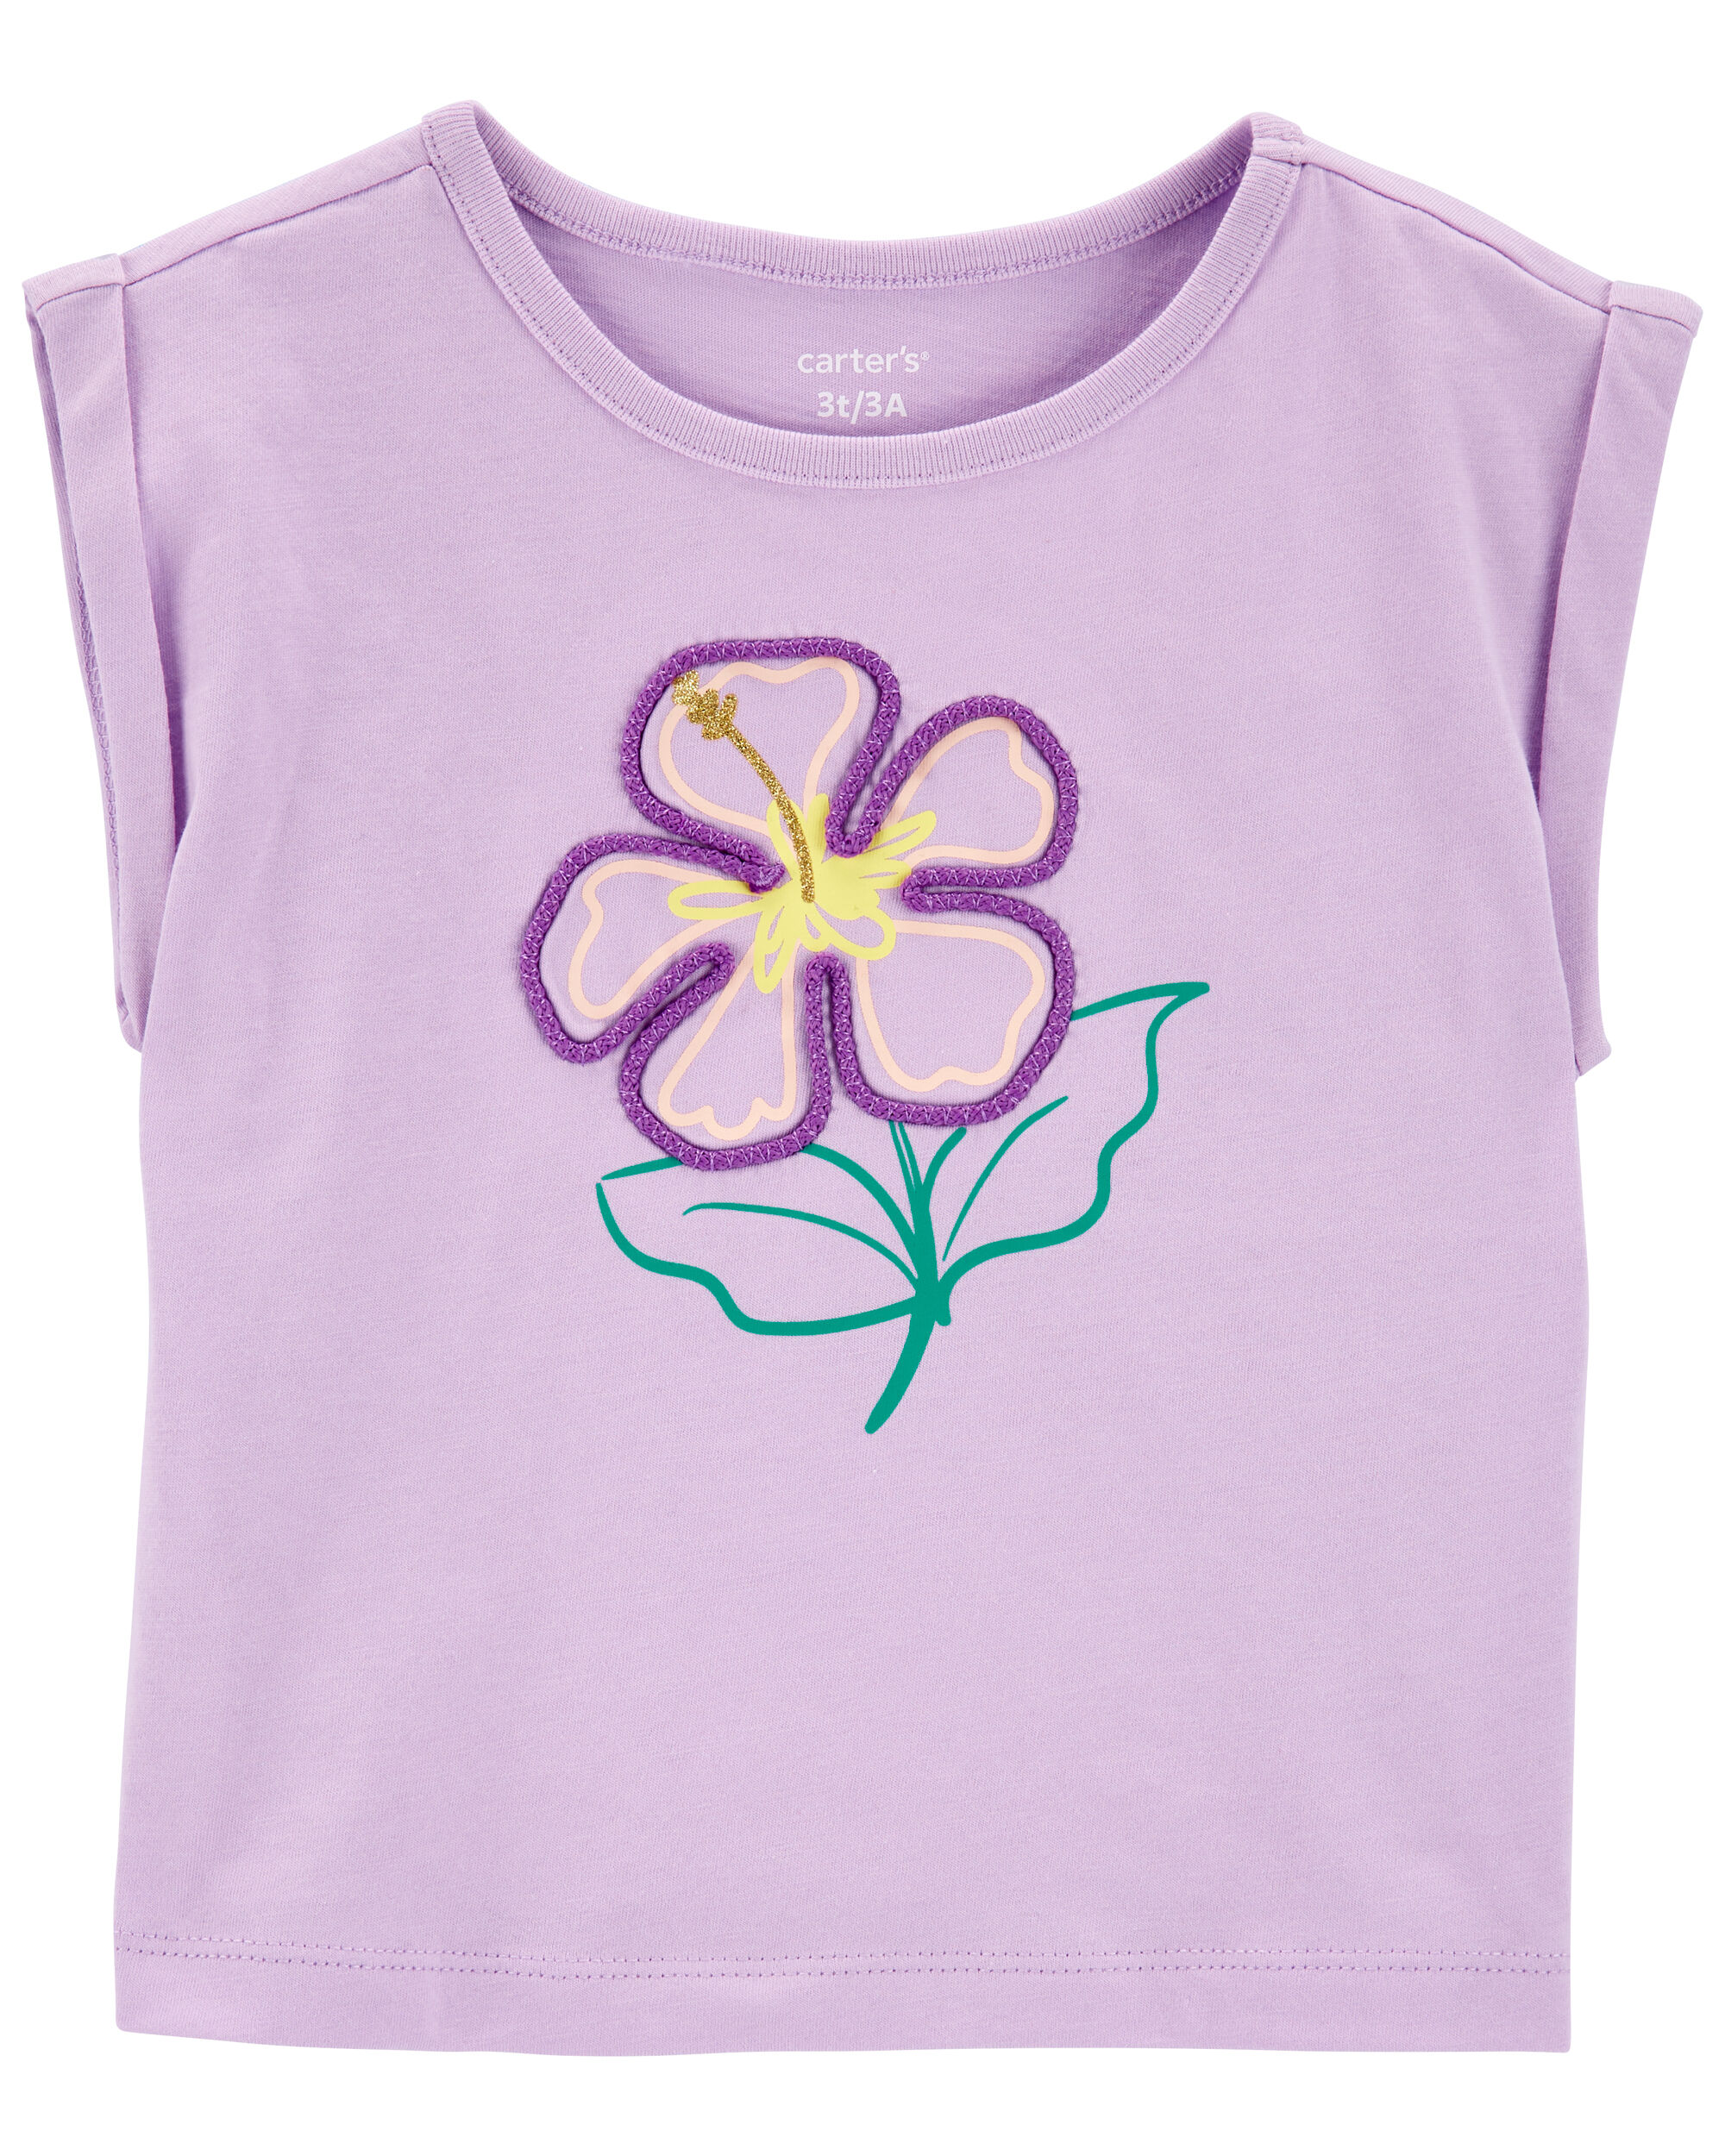 Трикотажная футболка с цветочным принтом для малышей Carter's